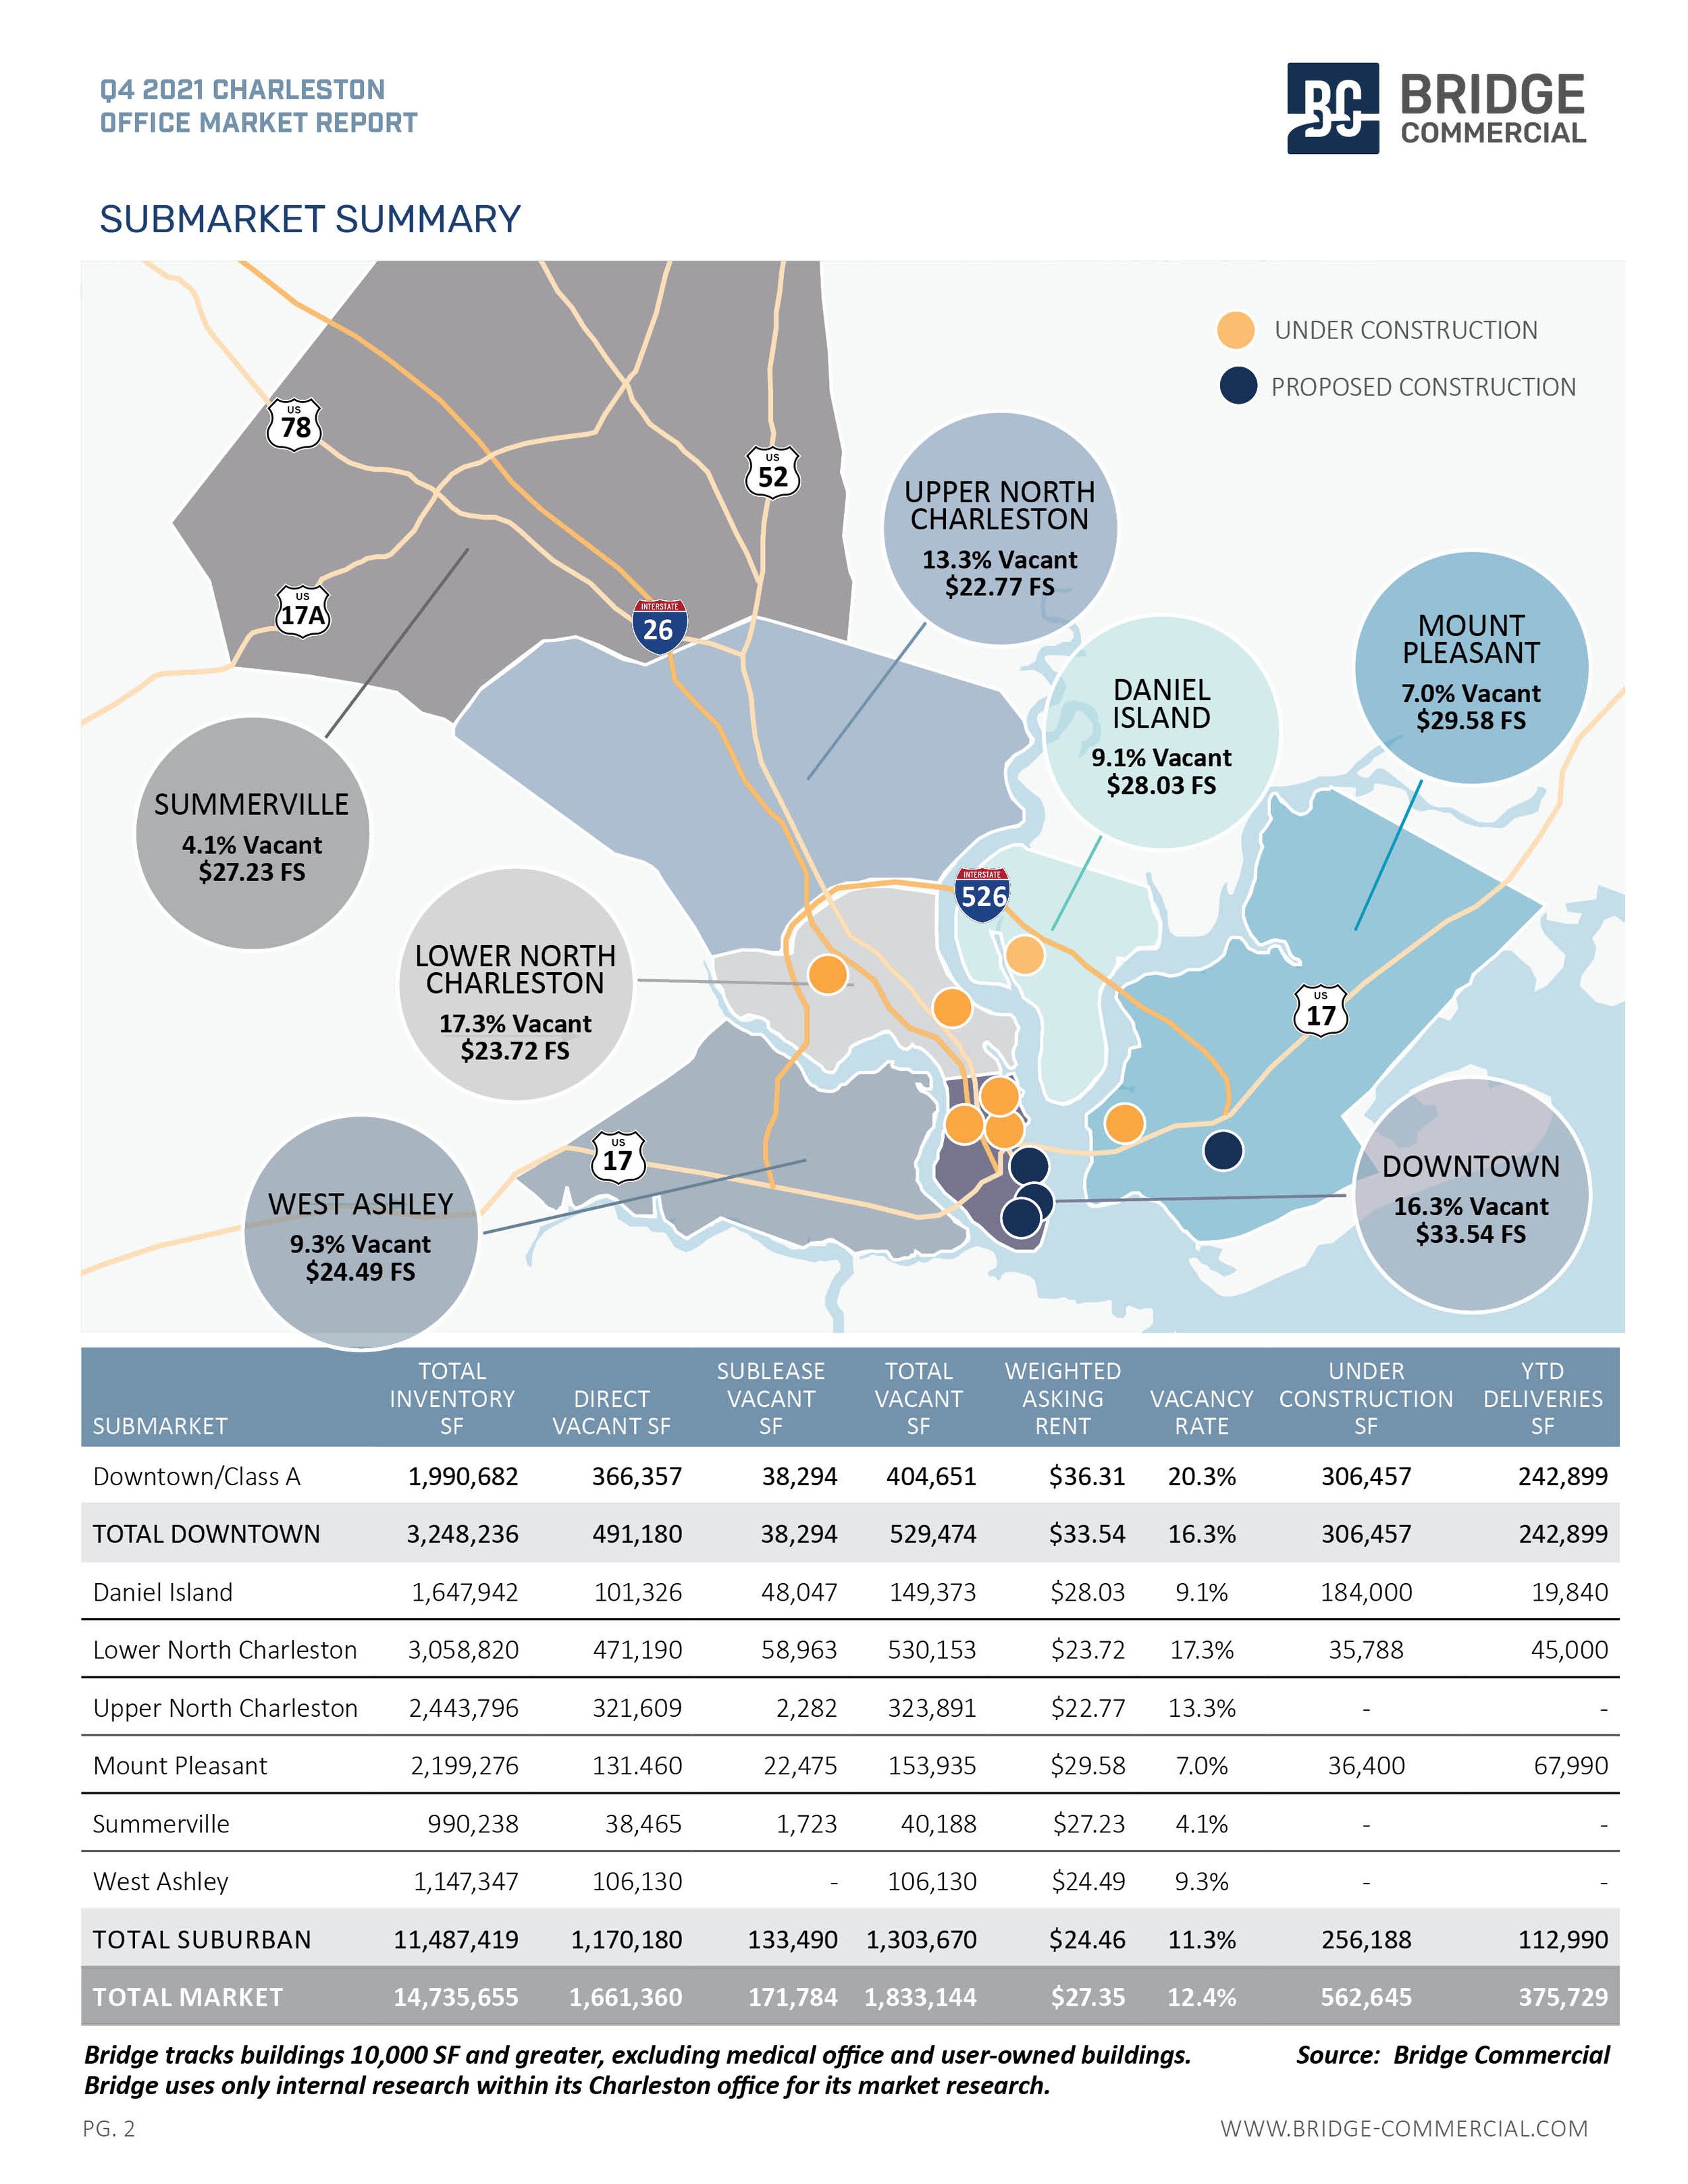 Q4 2021 Charleston Office Market Report_Bridge Commercial2.jpg